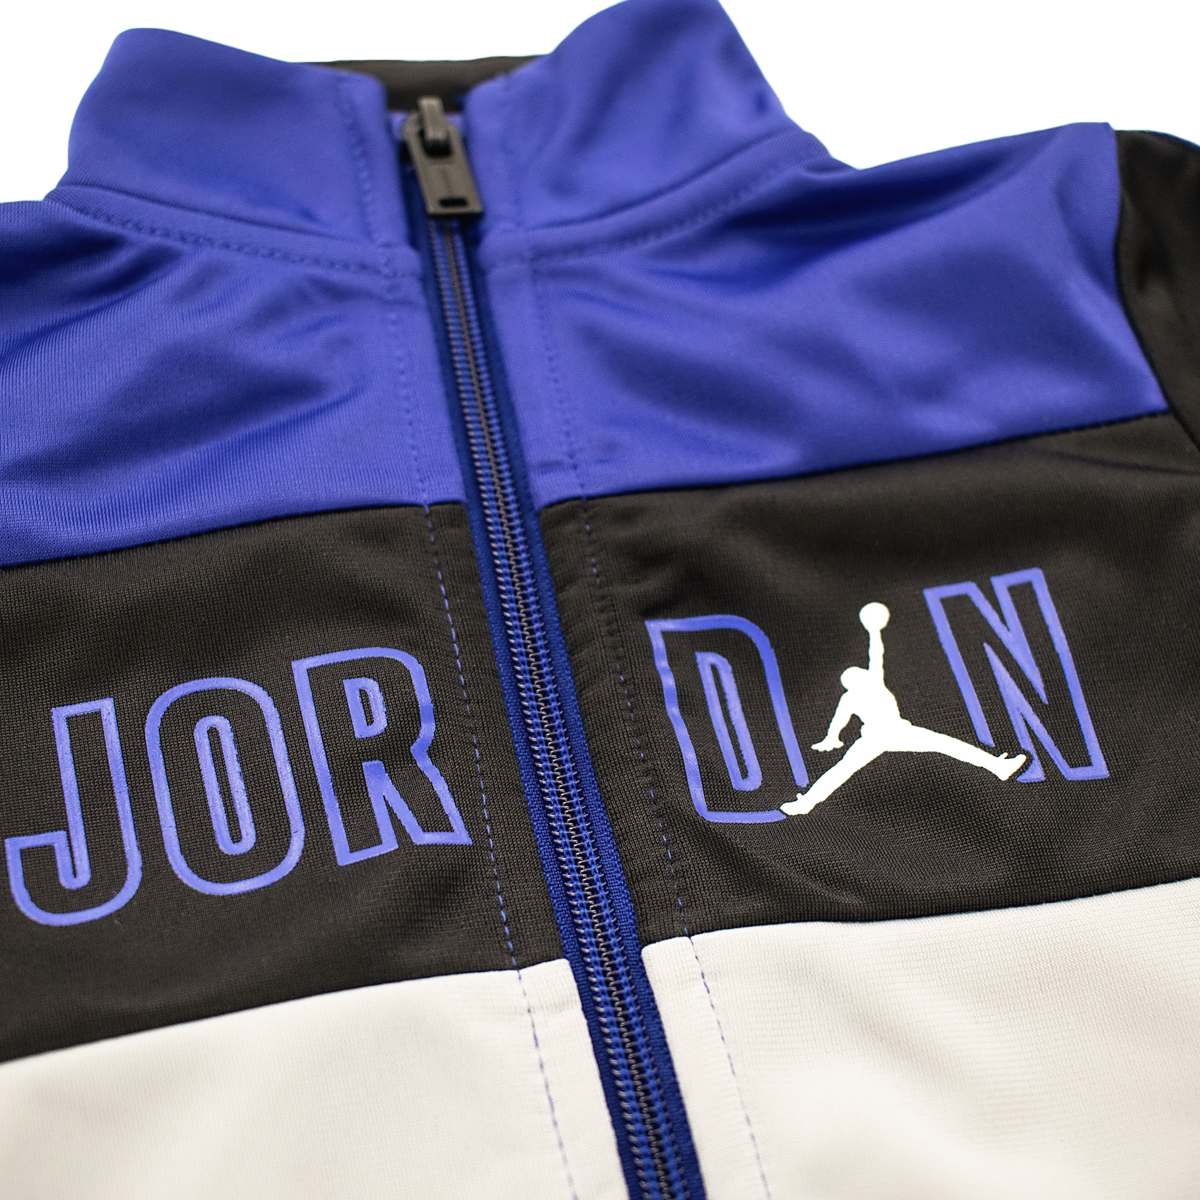 Jordan Box Out Trikot Set Anzug 65A235-U1A - blau